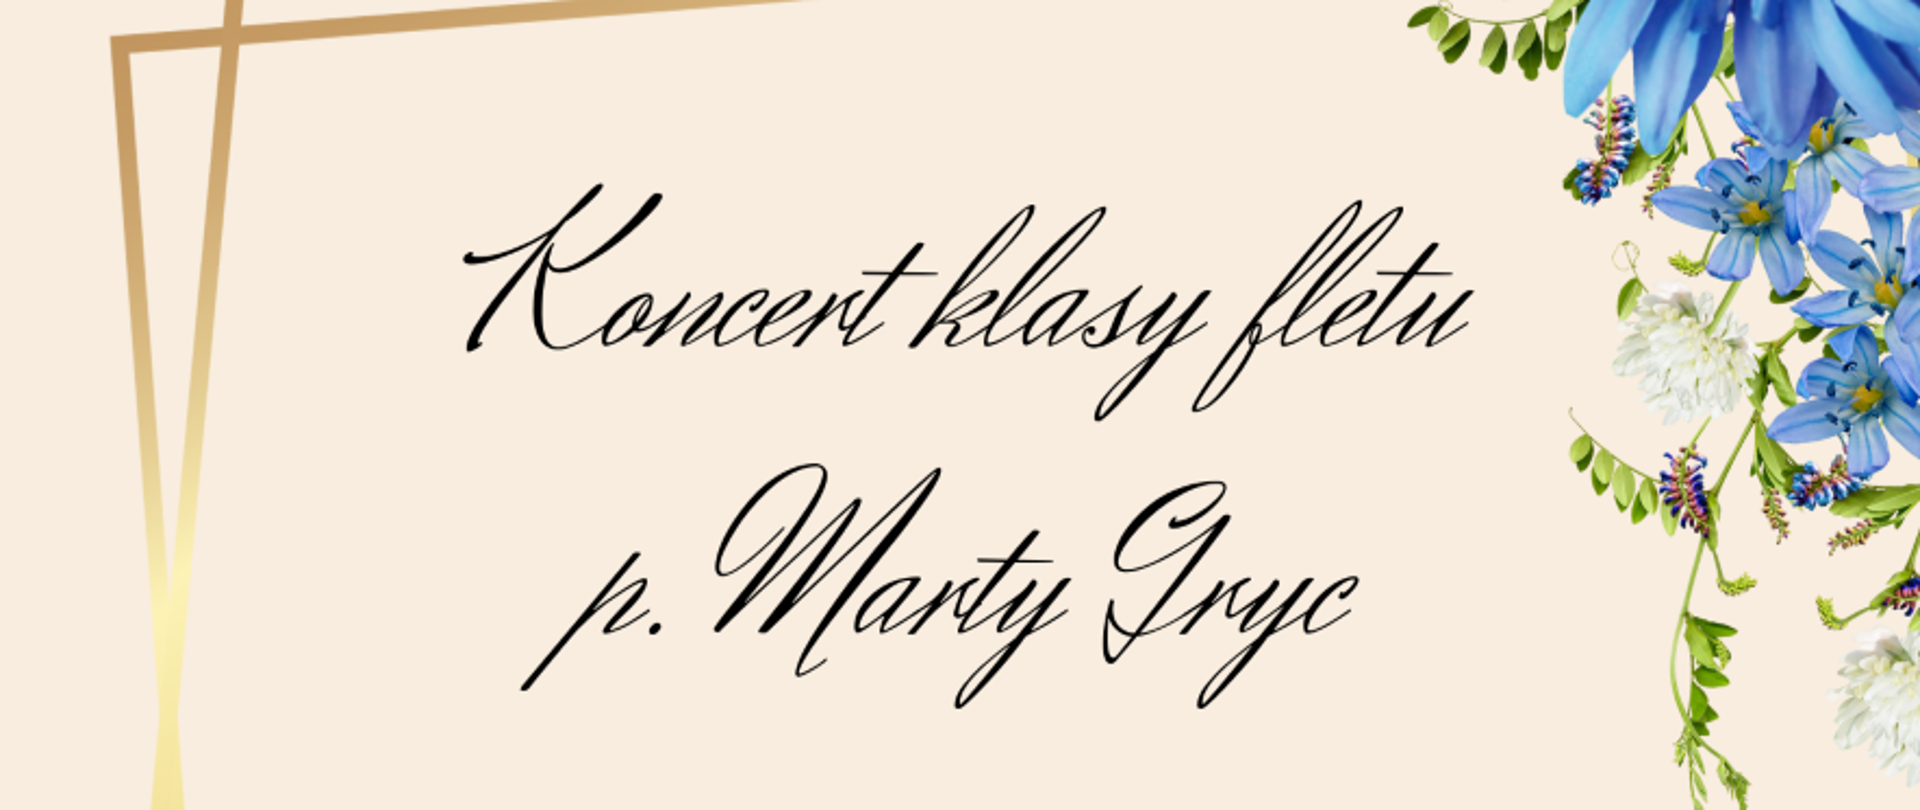 Plakat koncertu klasy fletu [ Marty Gryc. Informacje szczegółowe dotyczące wydarzenia napisane czarną czcionką na kremowym tle. Po bokach grafika przedstawiająca kwitnące kwiaty. 